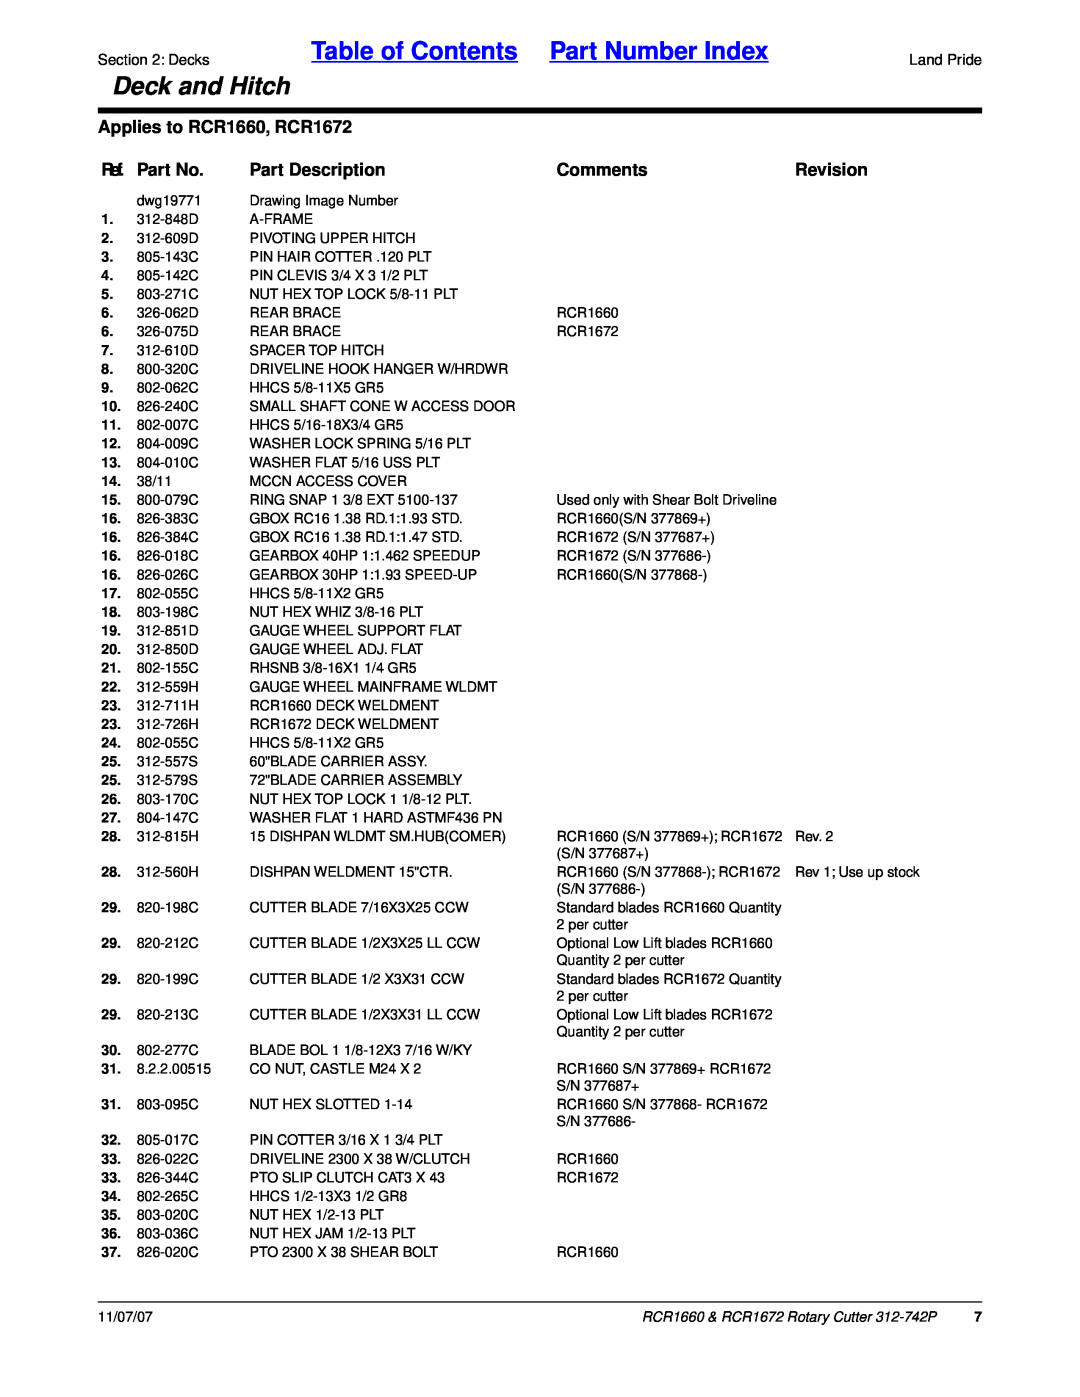 Land Pride RCR1660 Ref. Part No, Part Description, CommentsRevision, Table of Contents Part Number Index, Deck and Hitch 